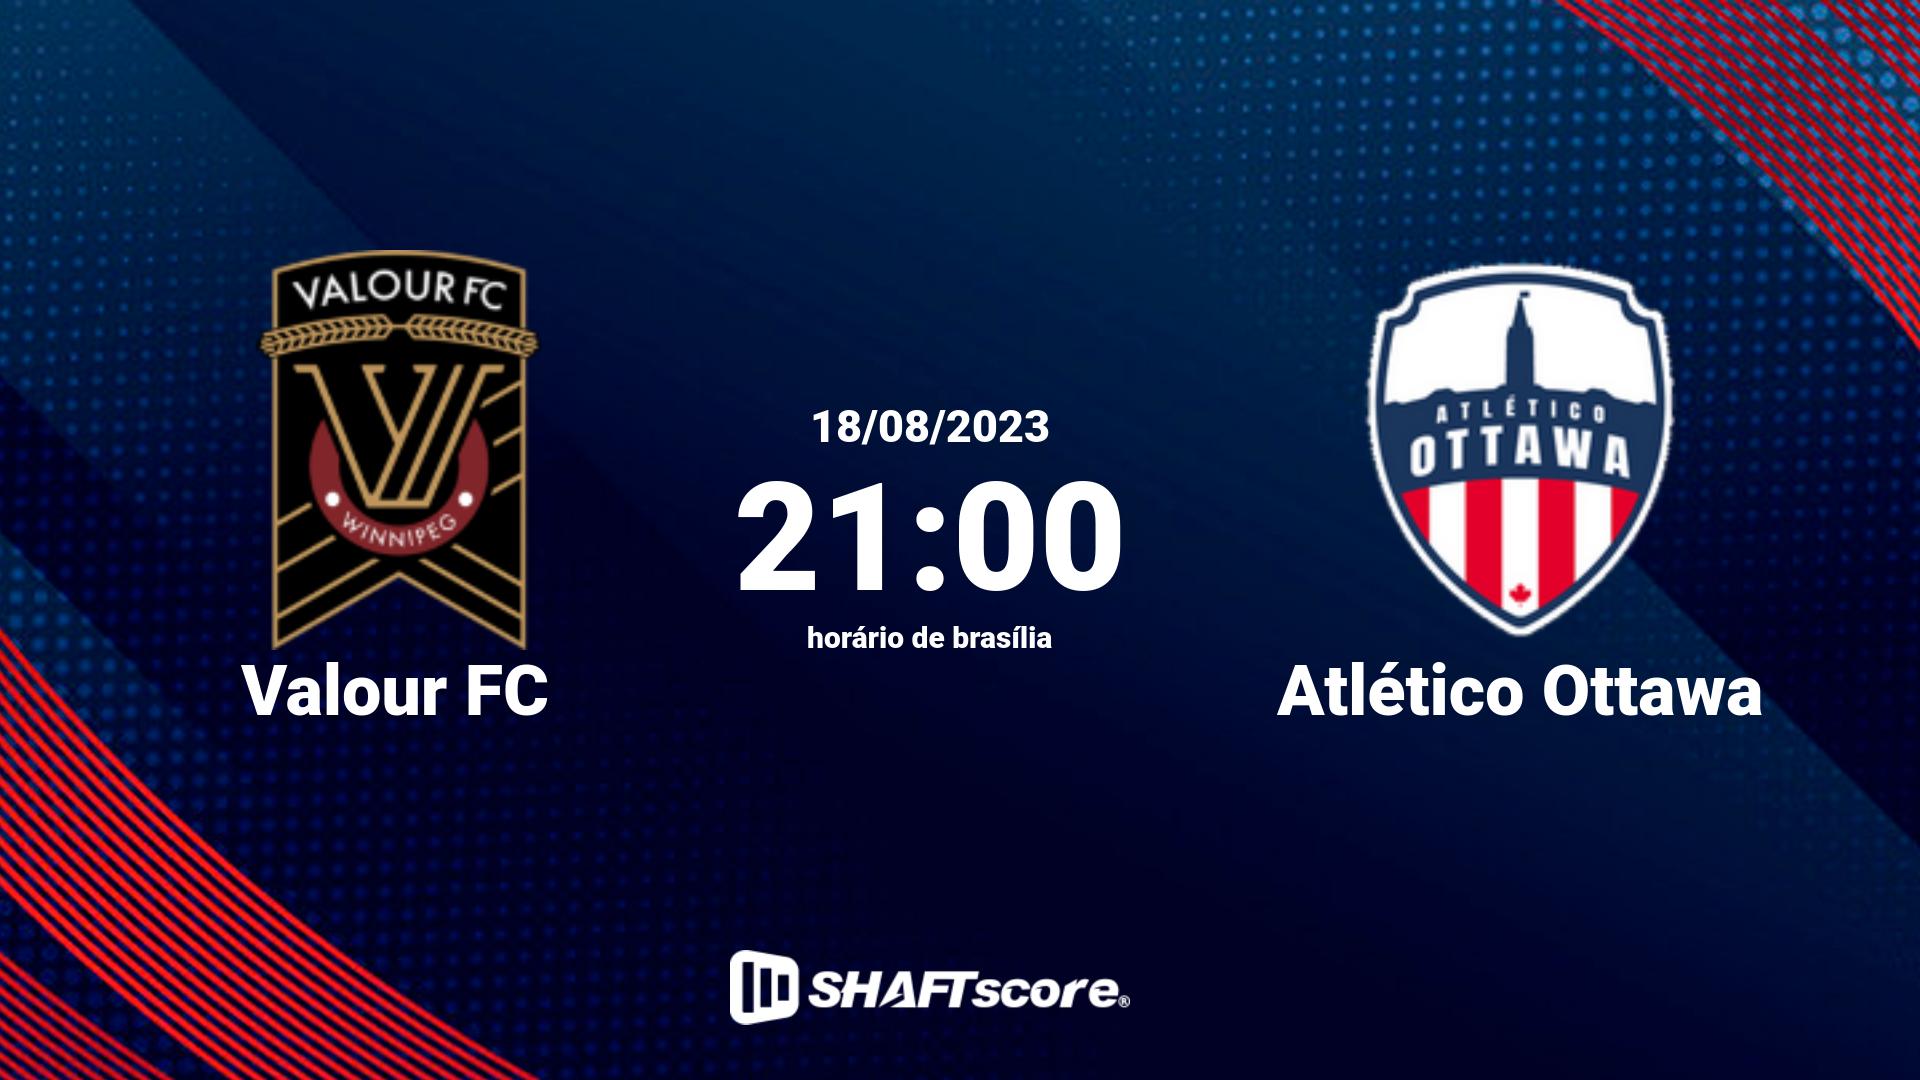 Estatísticas do jogo Valour FC vs Atlético Ottawa 18.08 21:00